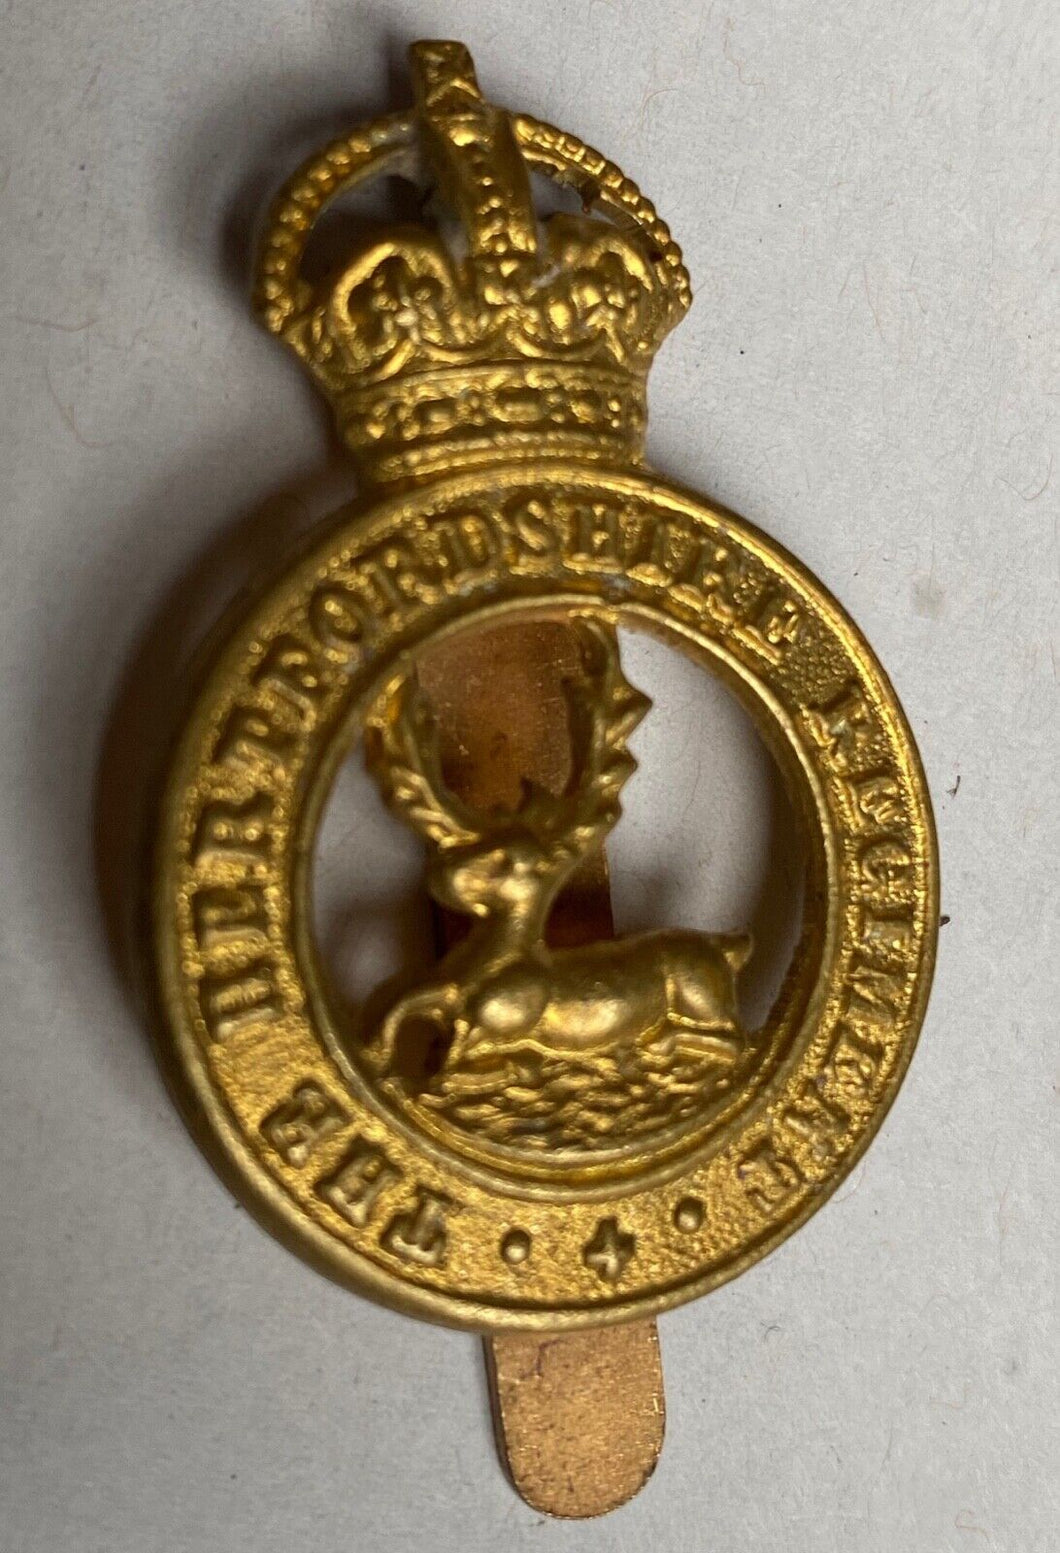 WW1 / WW2 British Army Hertfordshire Regiment gilt brass cap badge.